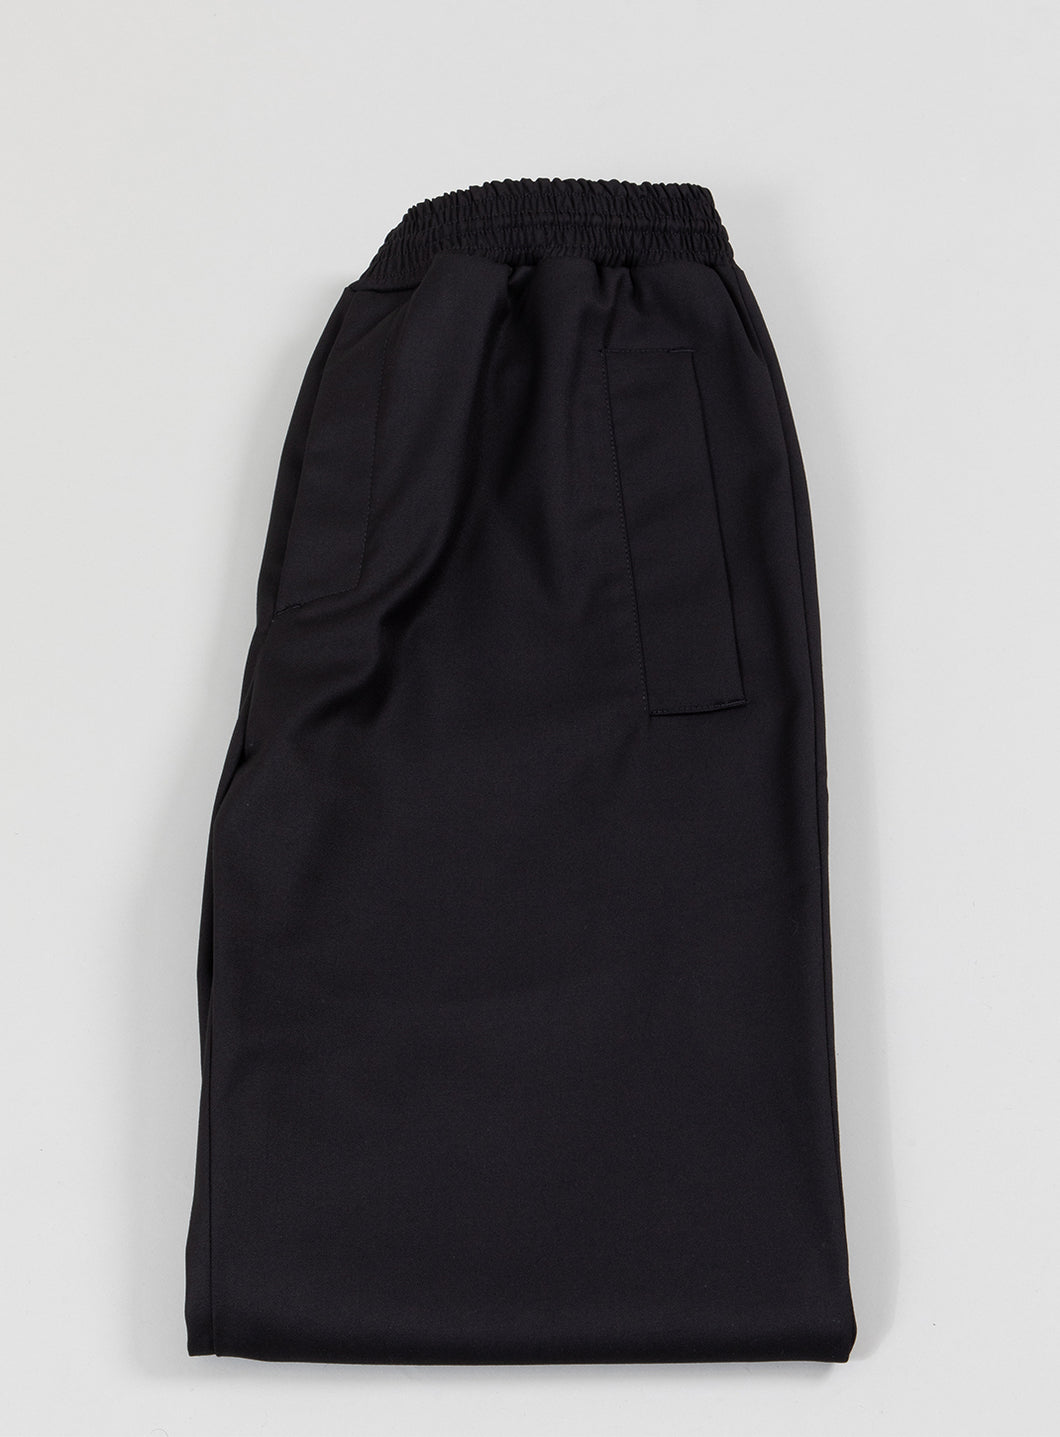 Pantalon Baggy en Tissu Serge Noir